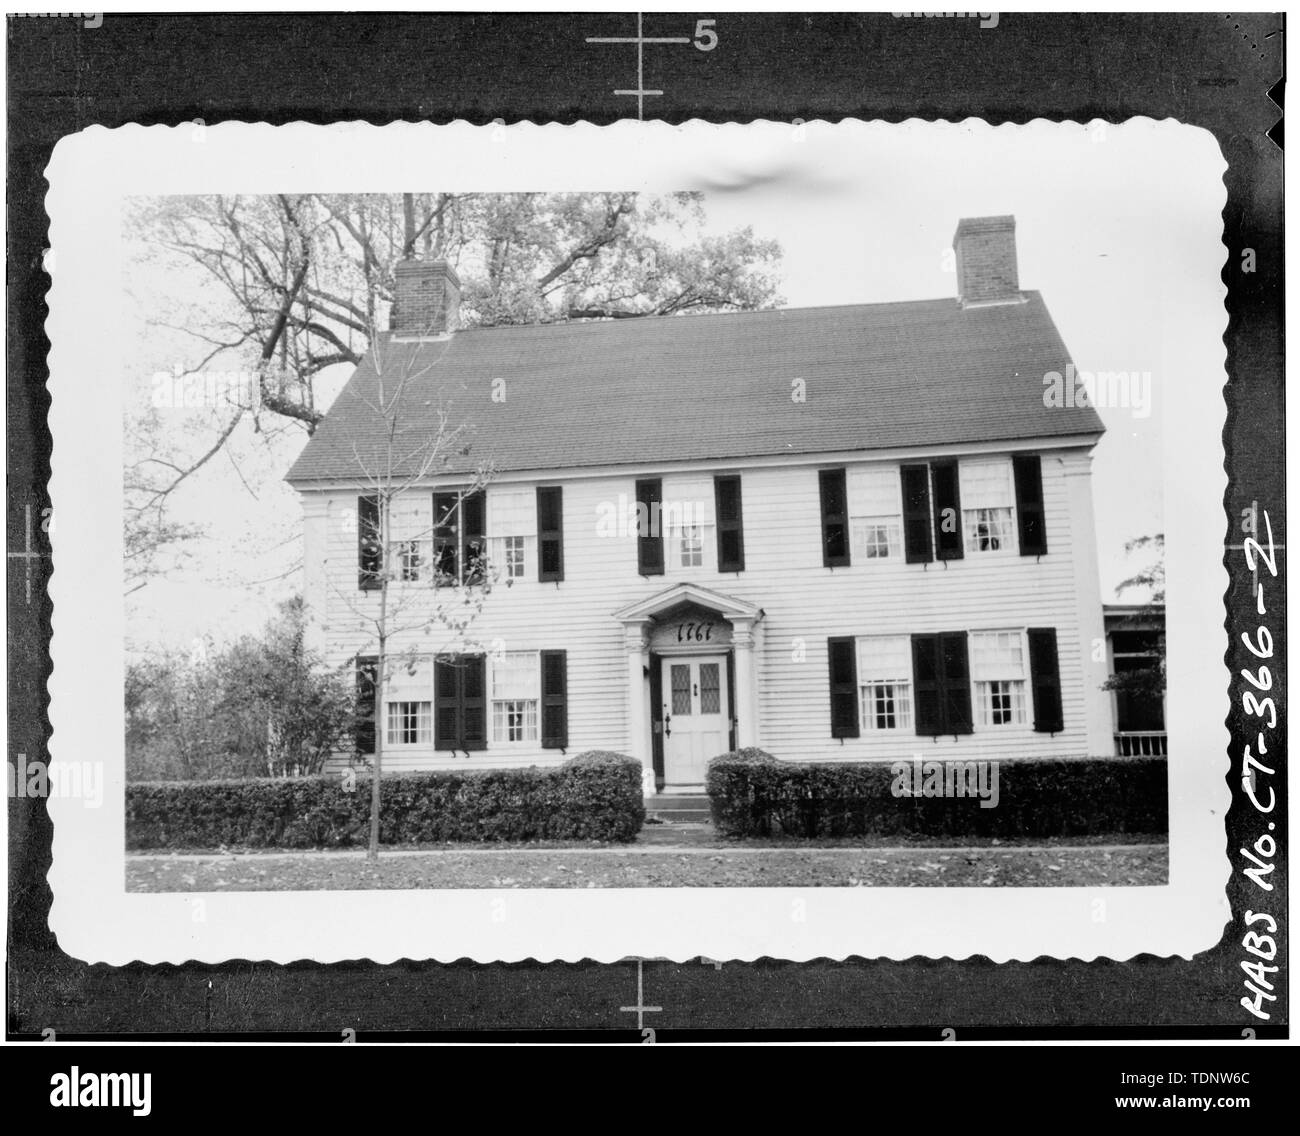 Fotocopia di inventario HABS fotografia. Fronte ovest. Fotografia scattata nel dicembre 1961 - General William Hart House, 350 Main Street, Old Saybrook, Middlesex County, CT Foto Stock